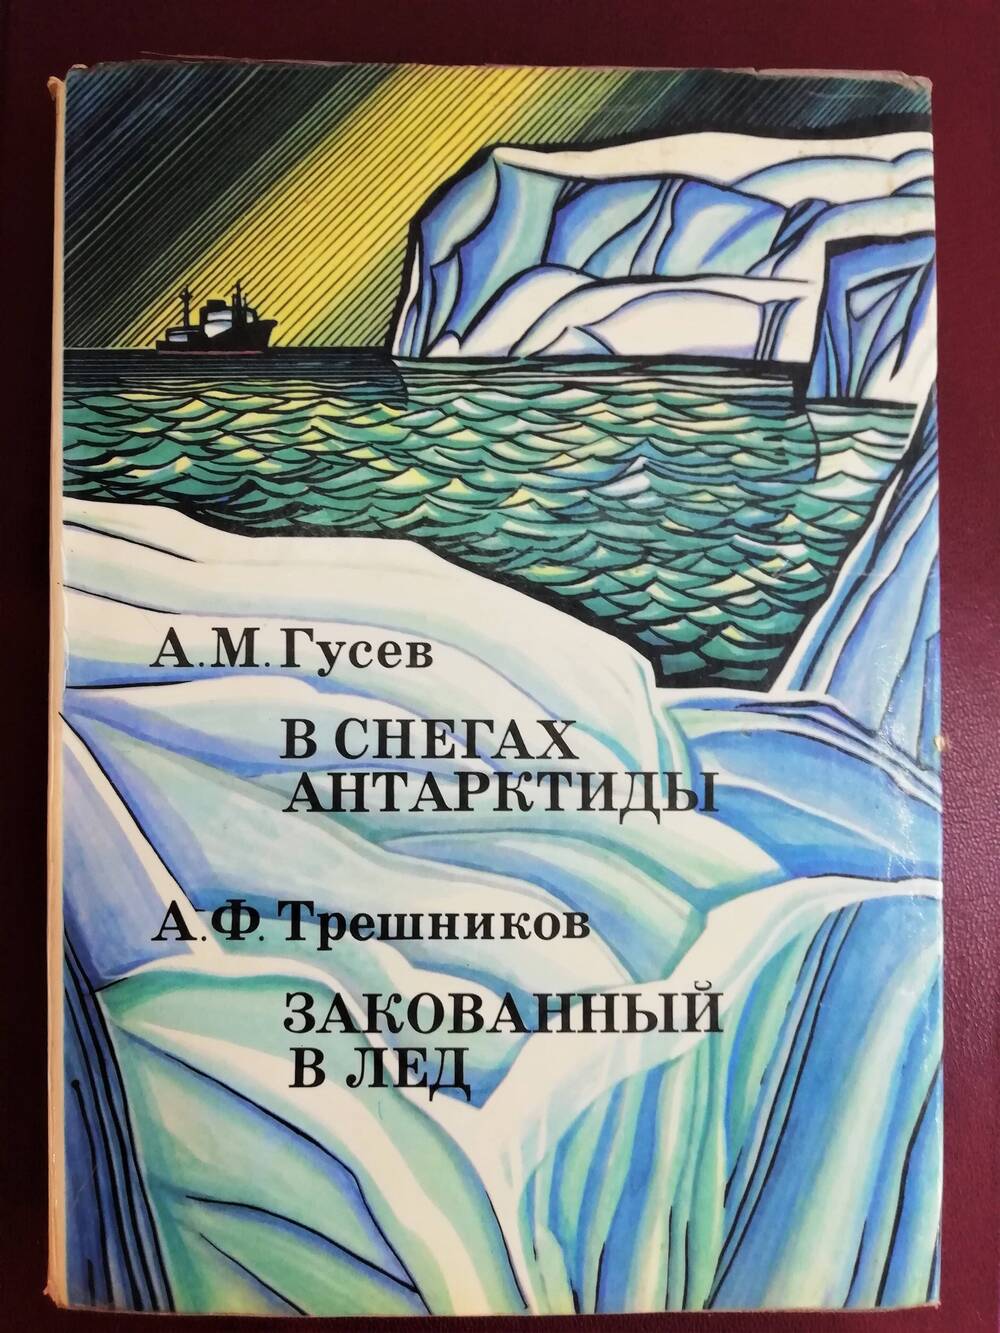 Книга. А.М. Гусев. В снегах Антарктиды. А.Ф. Трешников Закованный в лед.